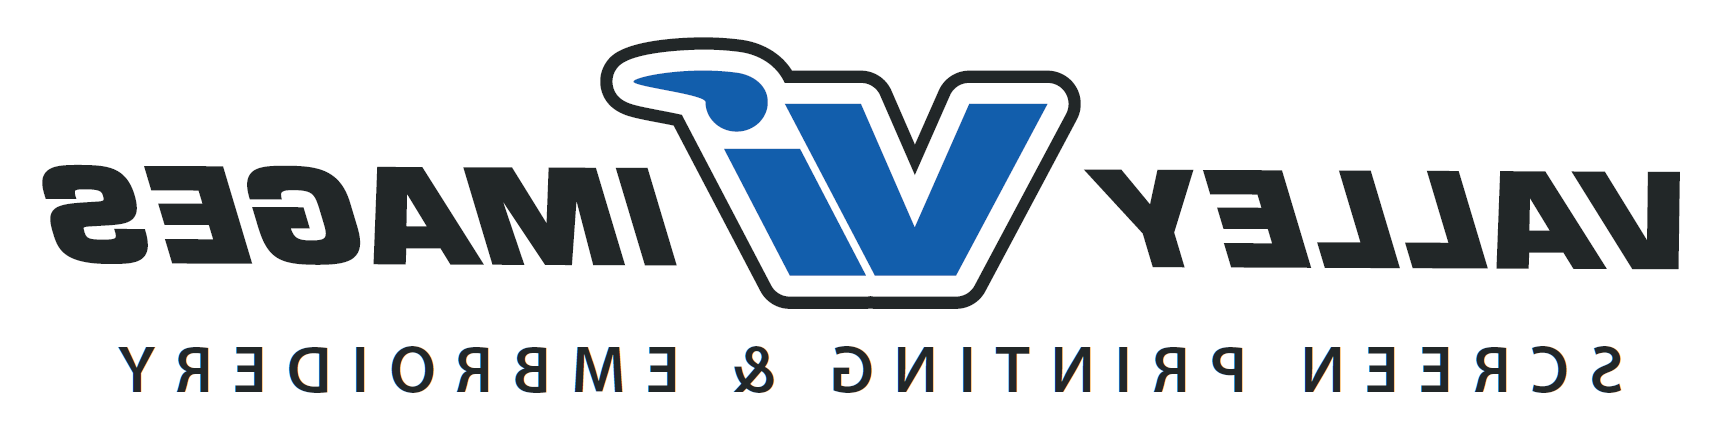 山谷图像的标志:字母V和蓝色的I, 中间相连，用黑色标出, 左边是“山谷”，右边是“图像”, 都是简单的黑色字体.